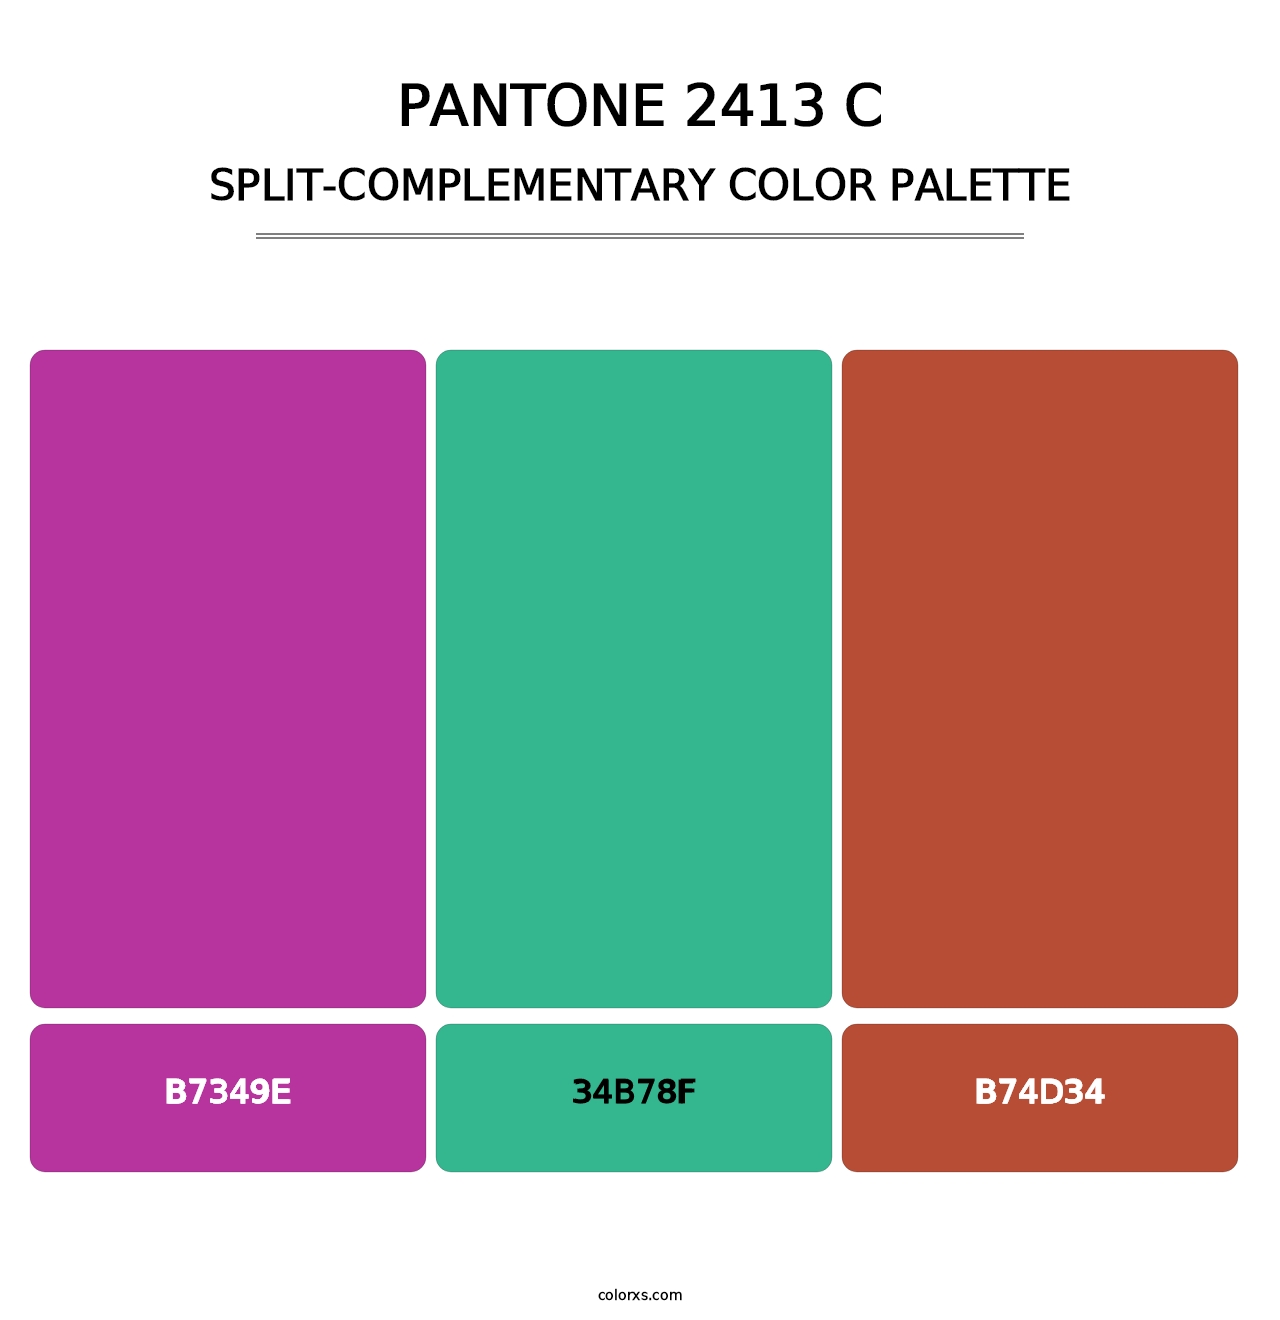 PANTONE 2413 C - Split-Complementary Color Palette